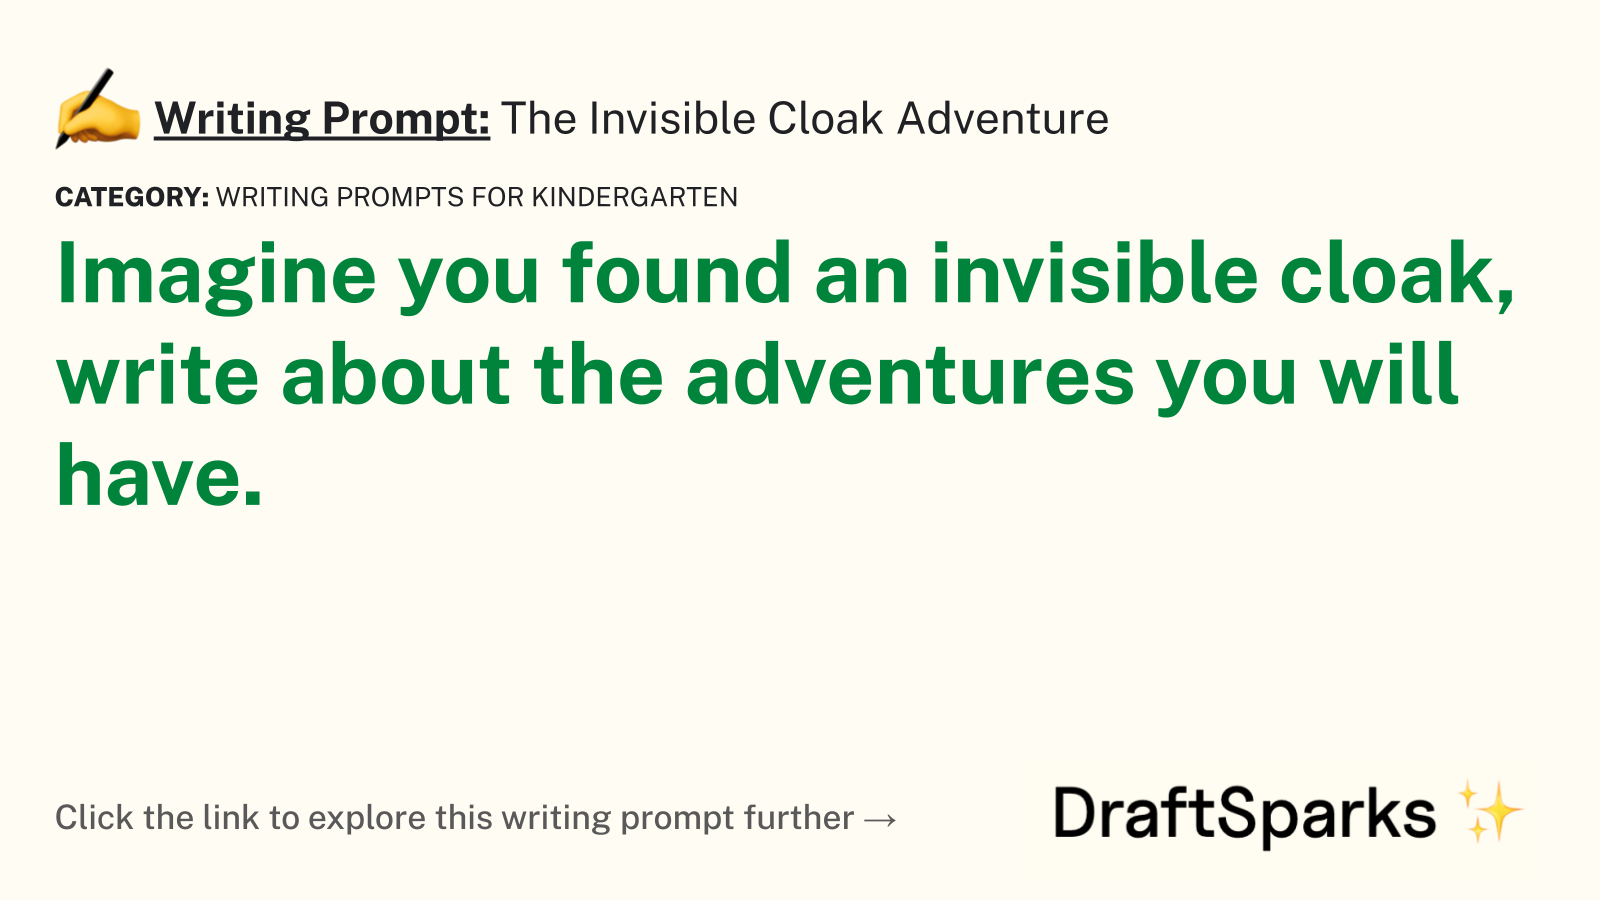 The Invisible Cloak Adventure